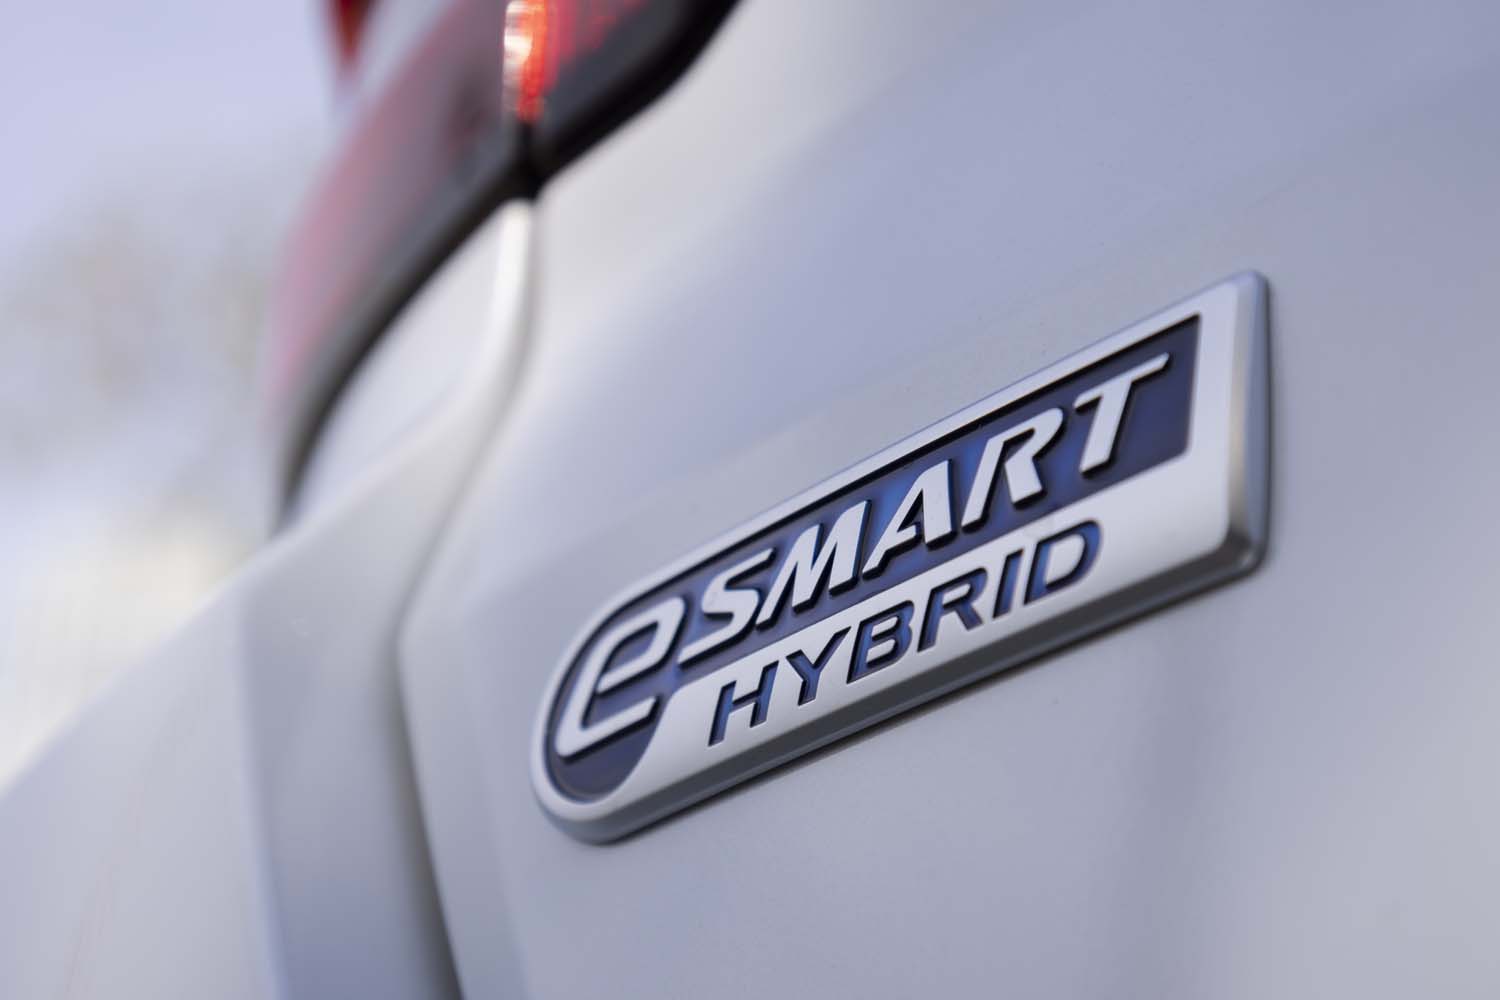 一部改良の目玉はダイハツ初の量産ハイブリッドモデル。エンジンを発電専用に使い、前輪をモーターで駆動するシリーズ式の「e-SMART HYBRID」が設定された。